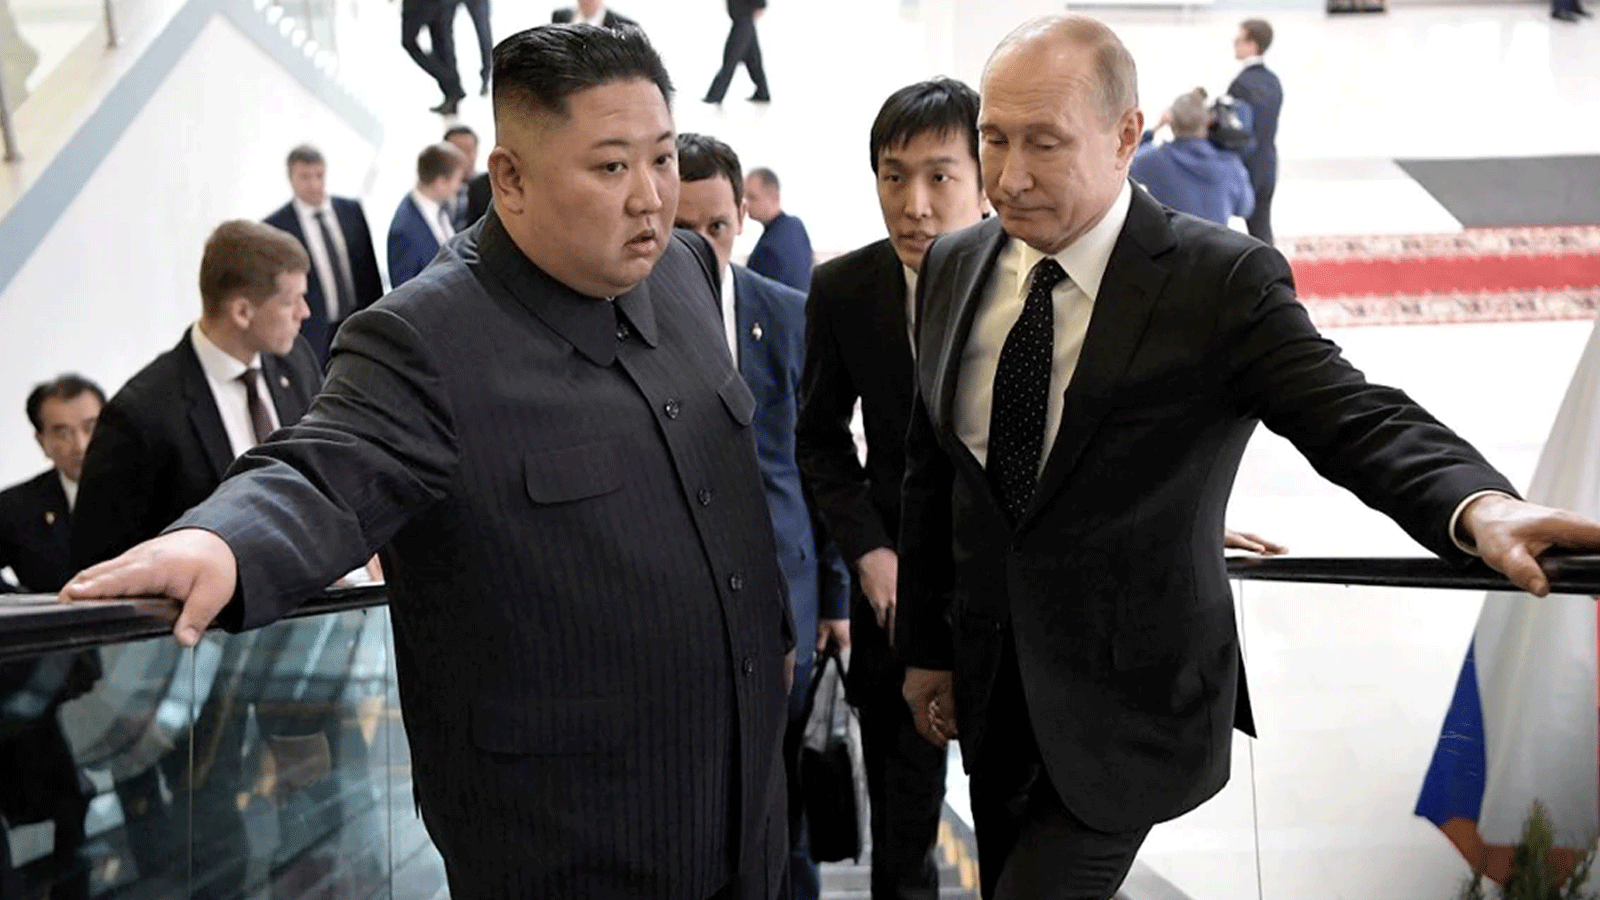 الرئيس الروسي فلاديمير بوتين مستقبلا الزعيم الكوري كيم جونغ-أون